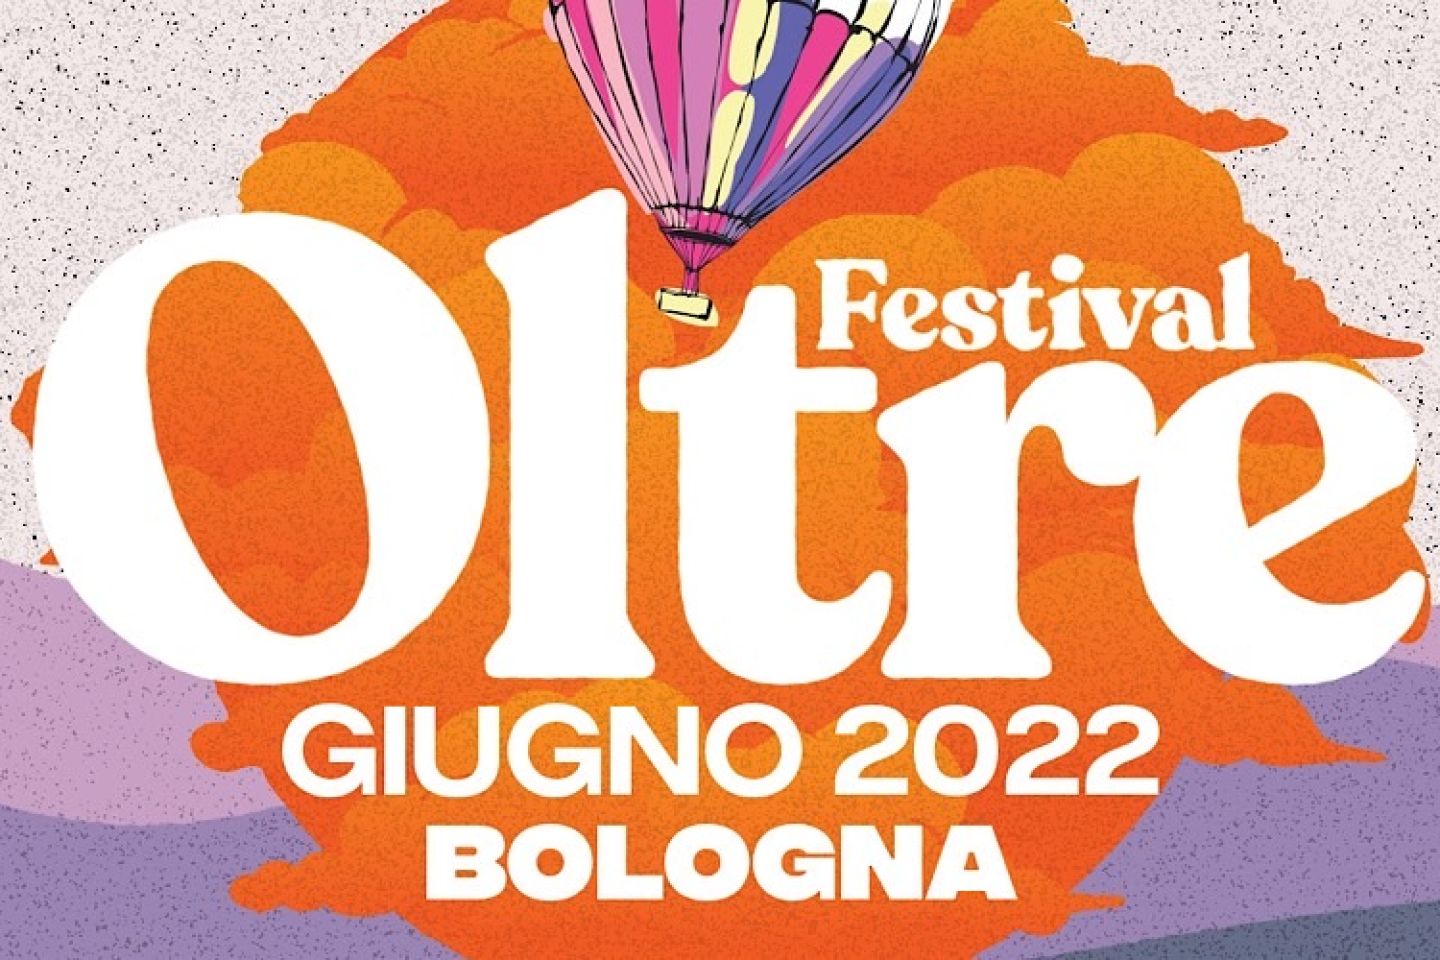 Dal 21 al 25 giugno torna a Bologna OLTRE Festival: la musica come messaggio di pace per andare “oltre” ogni confine o bandiera